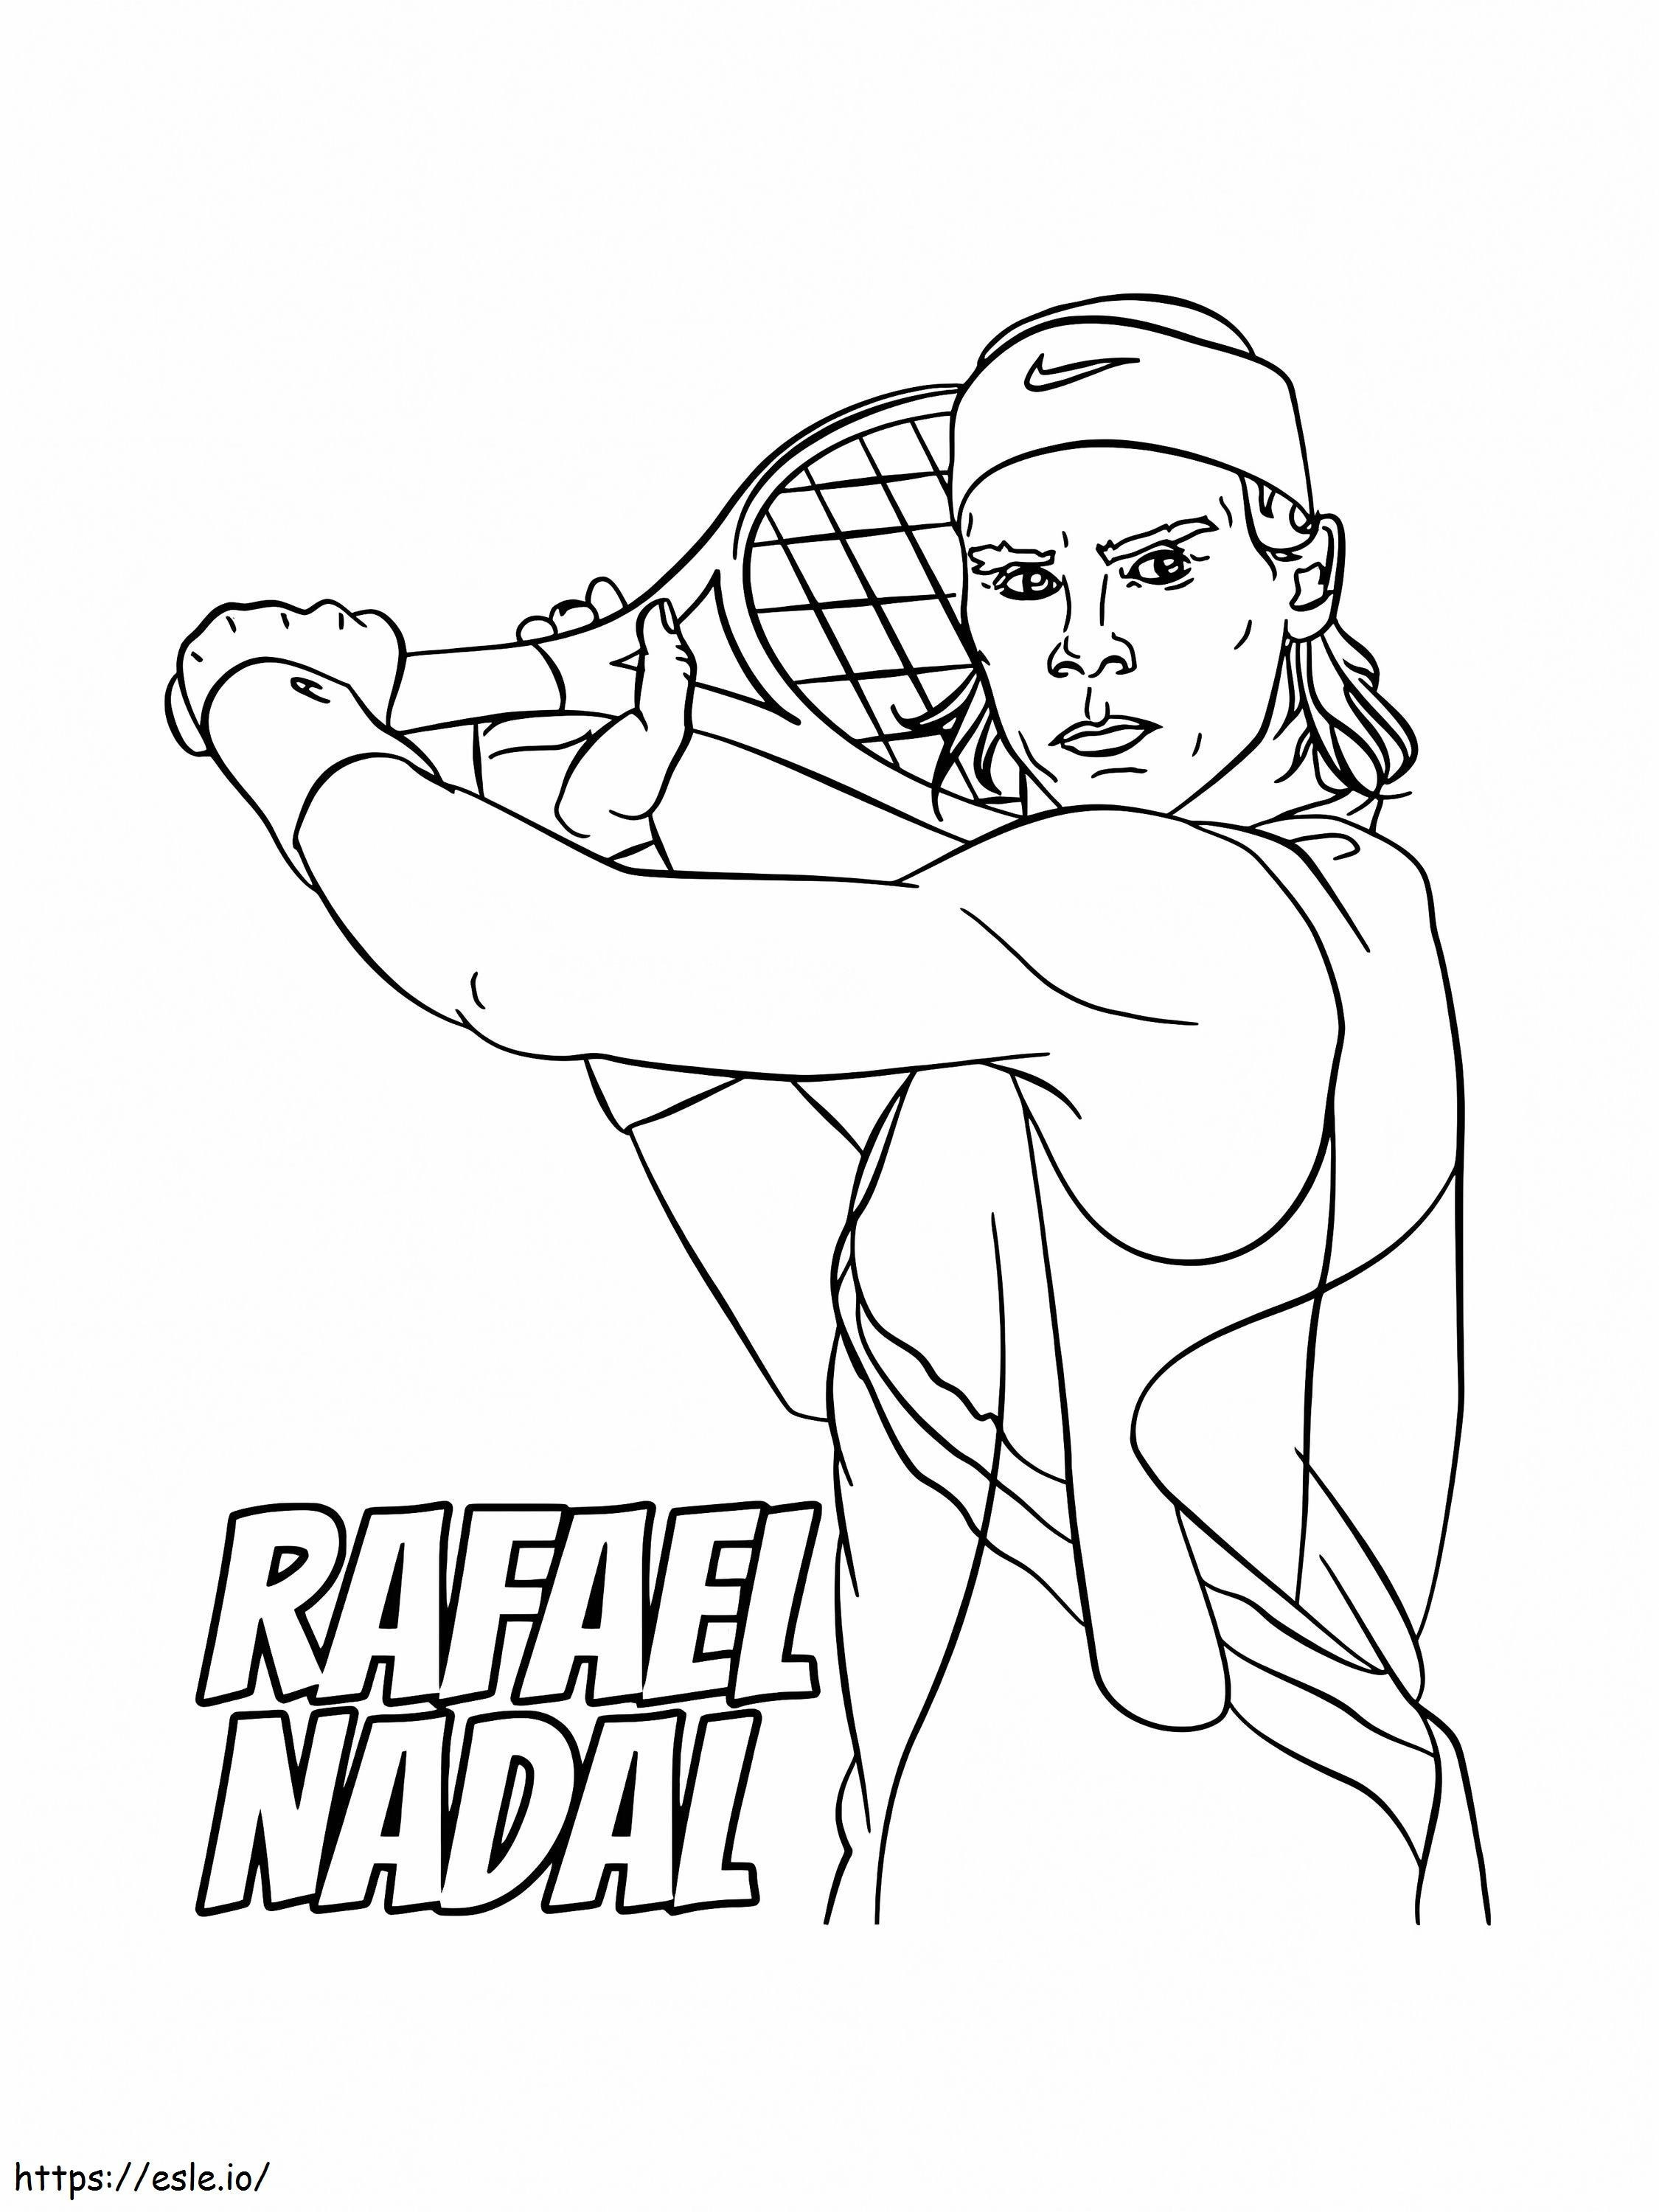 Rafael Nadal Tenis Oynuyor boyama